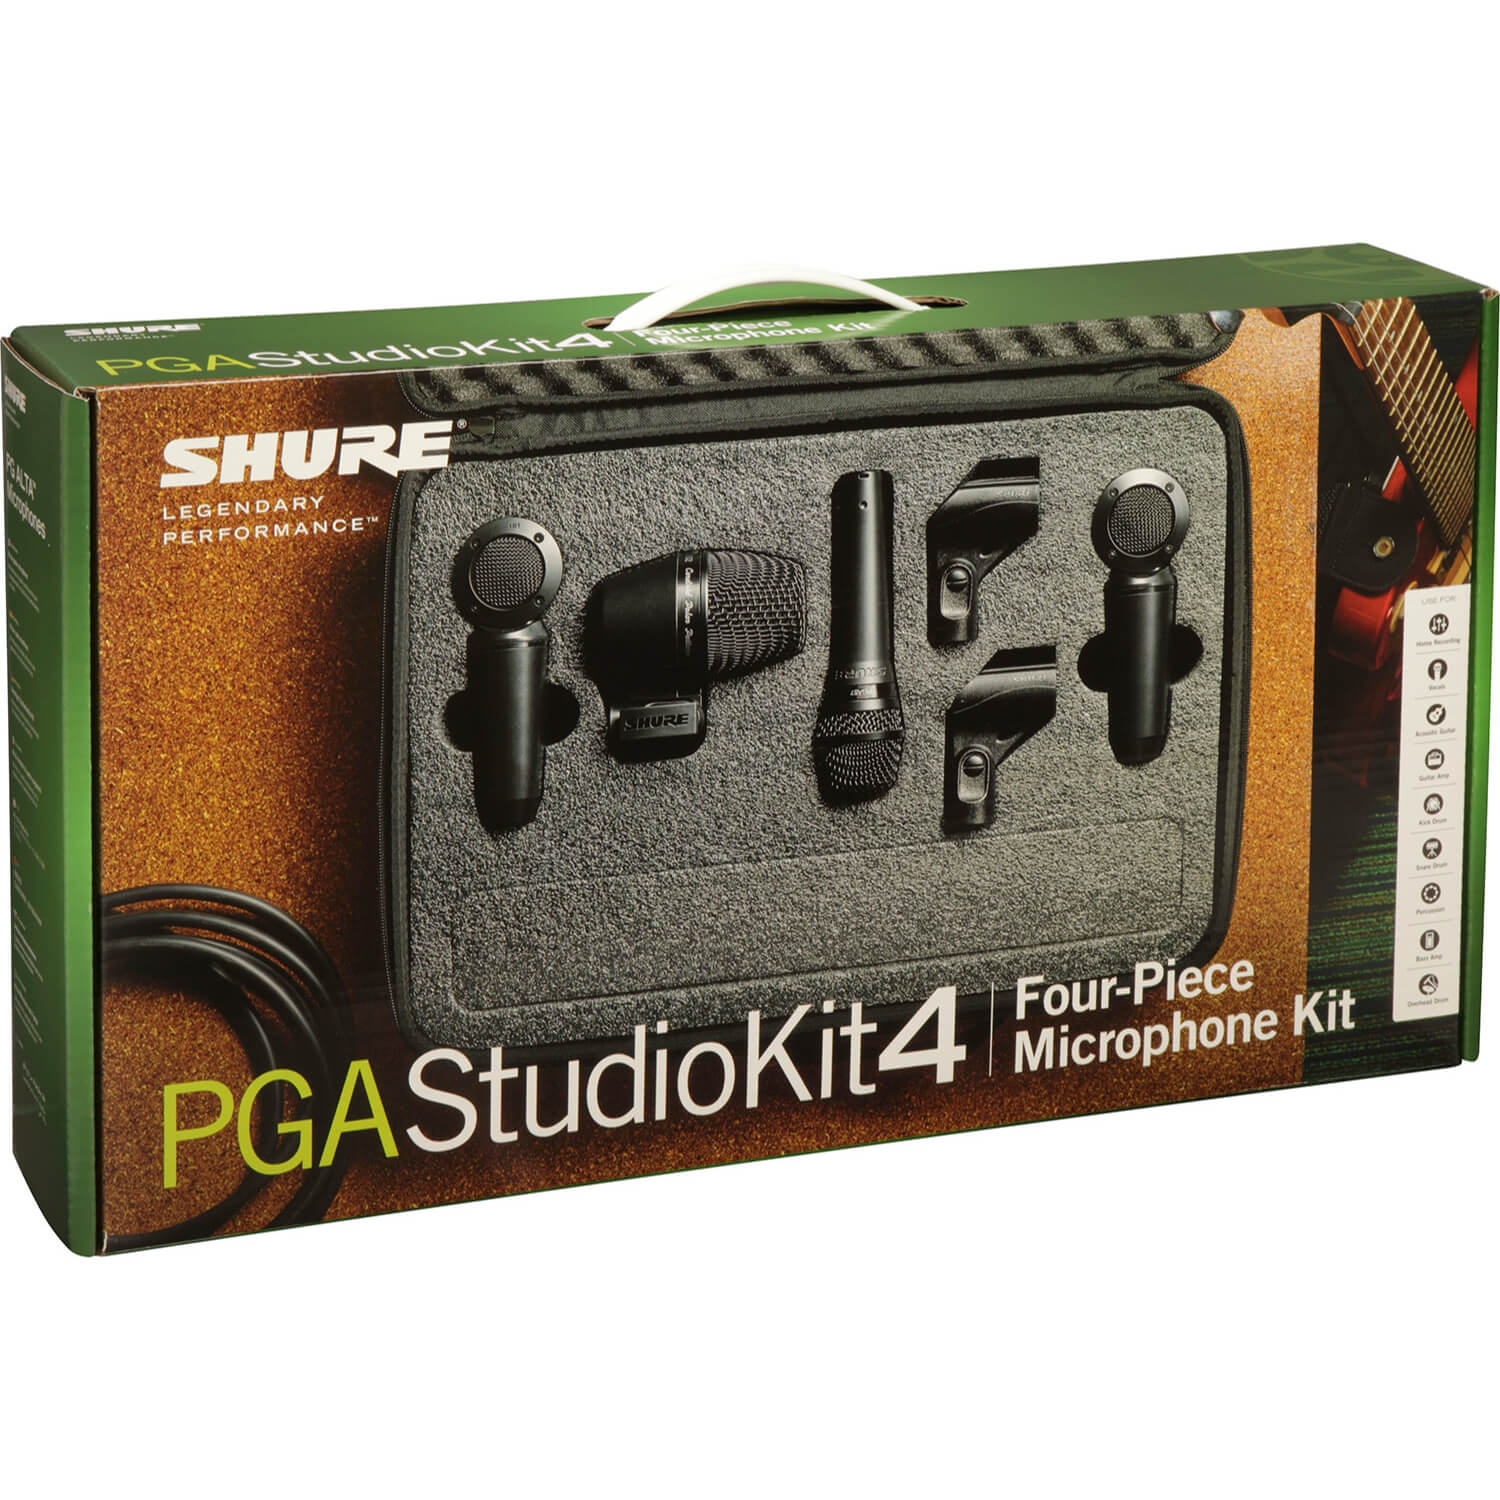 Shure PGAStudioKit4 Microphone Kit Review